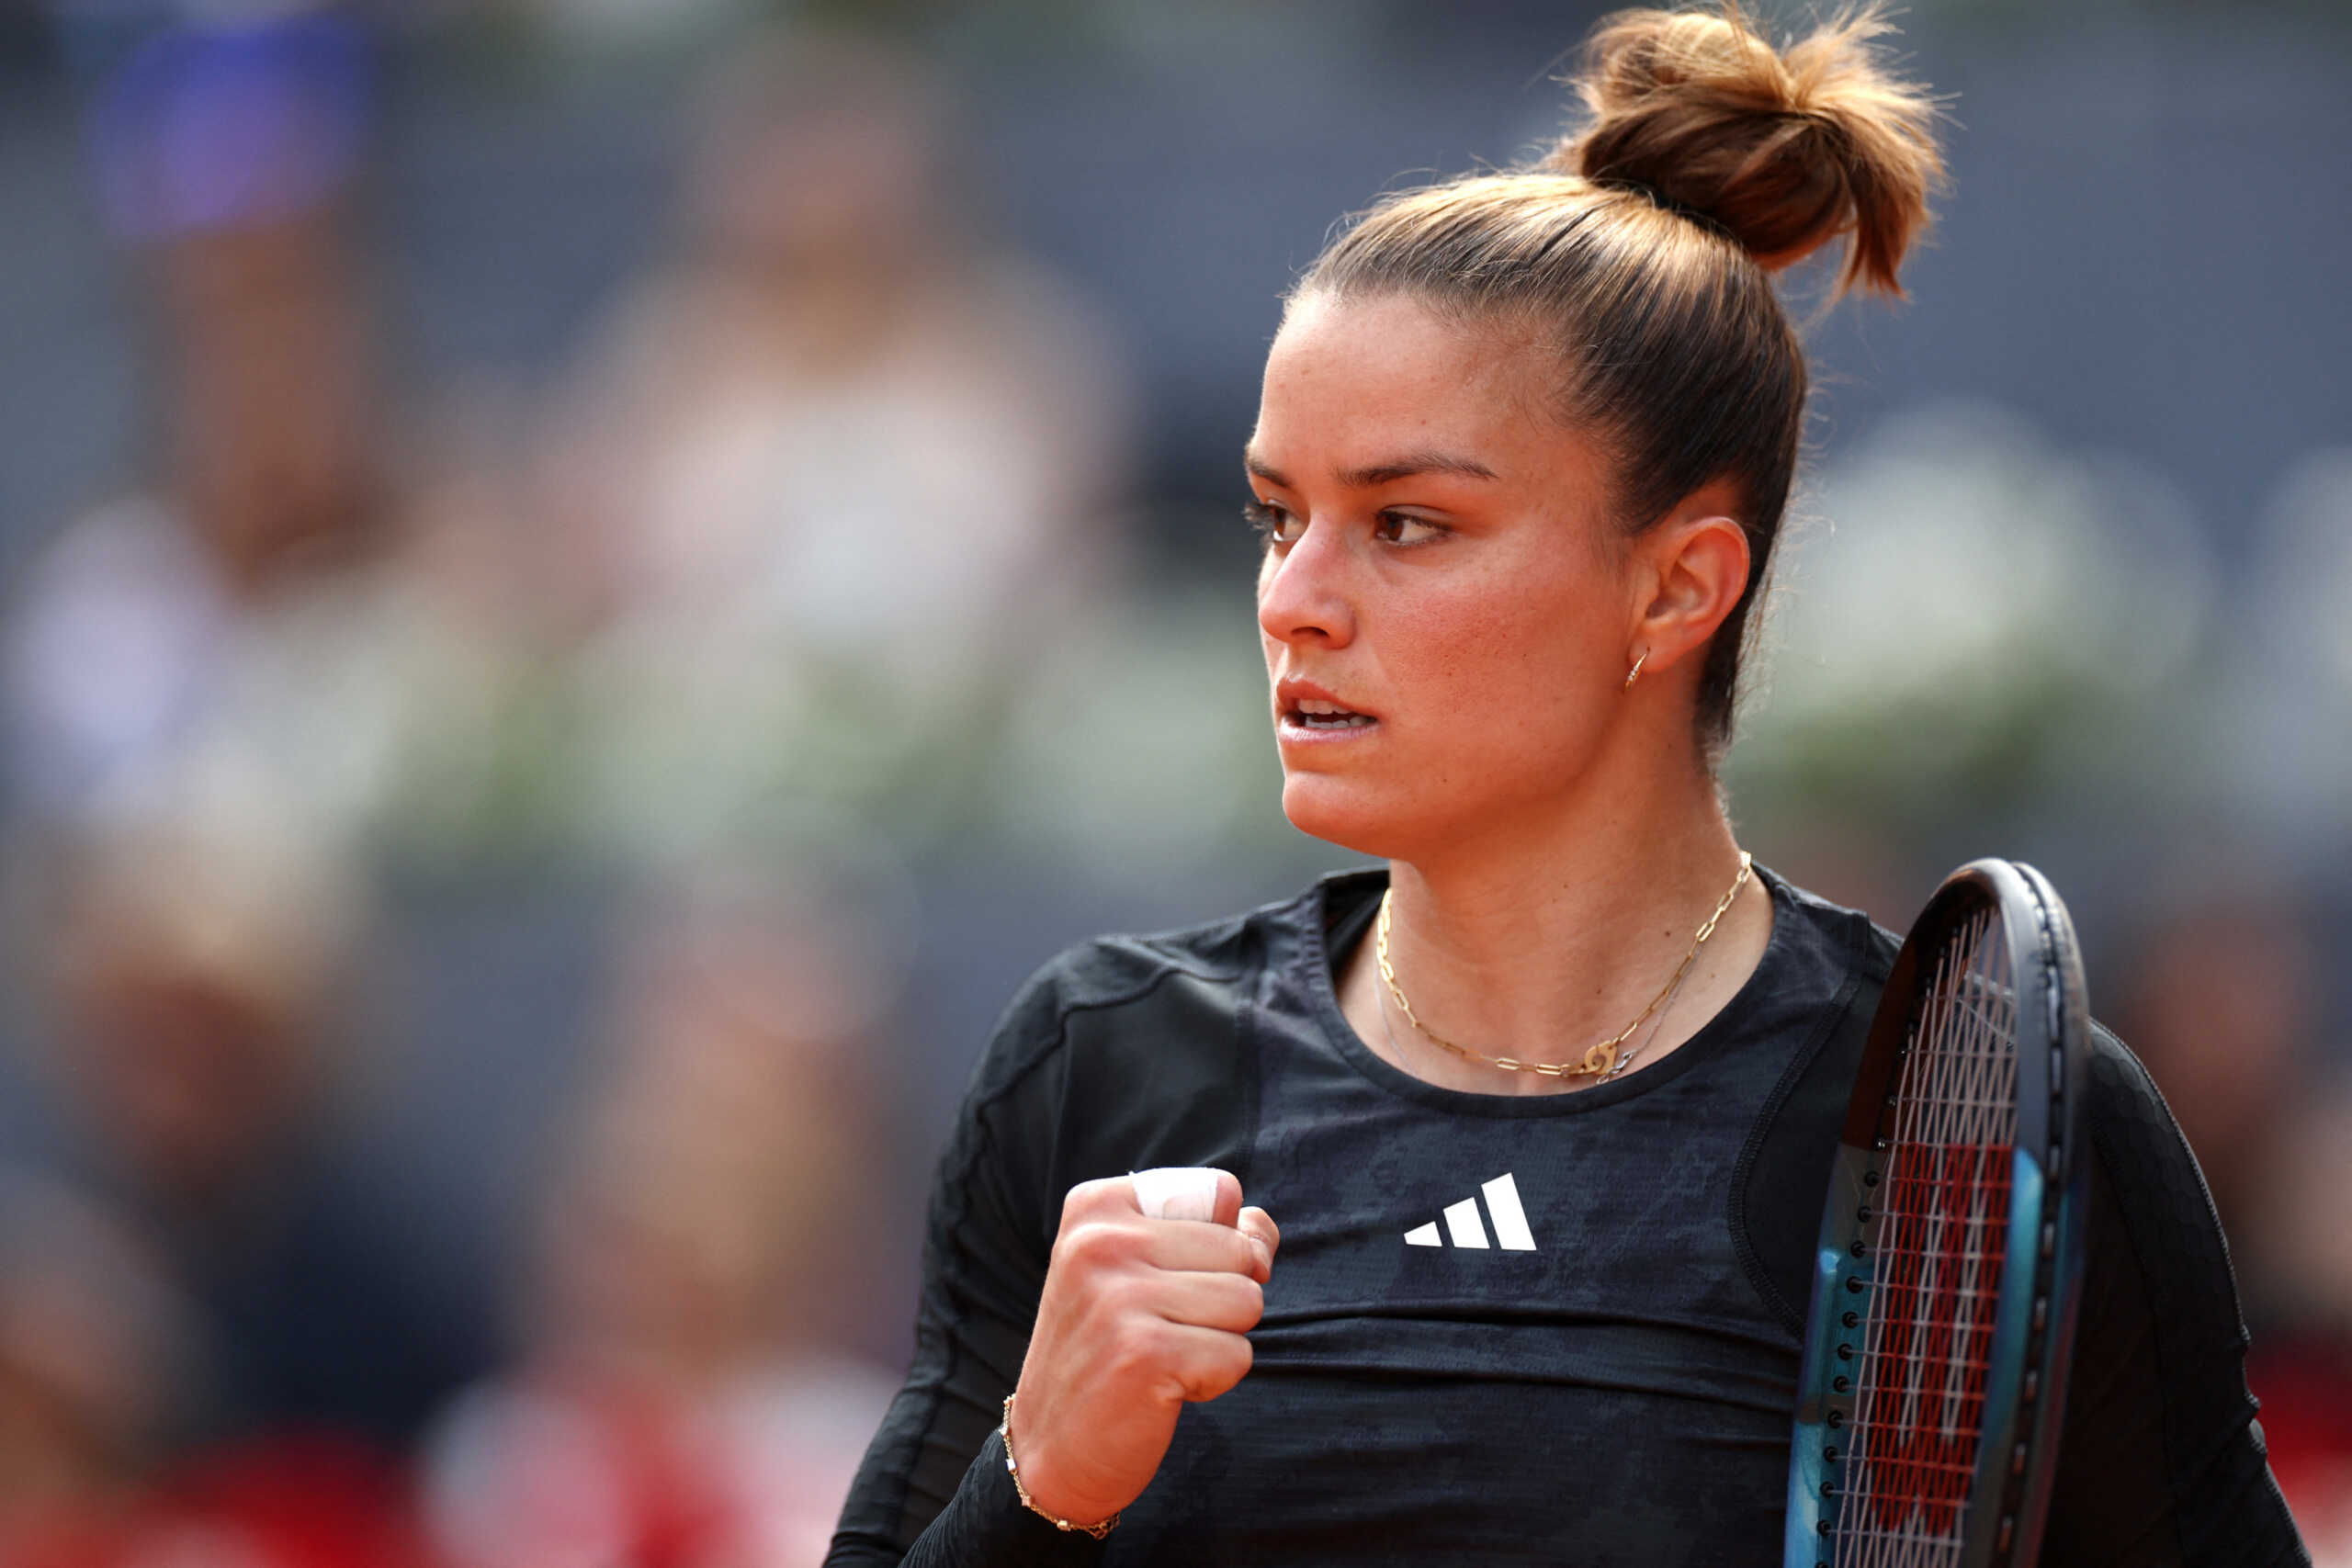 Μαρία Σάκκαρη – Ιρίνα Μπέγκου 2-1: Ανατροπή και πρώτος ημιτελικός στο Madrid Open